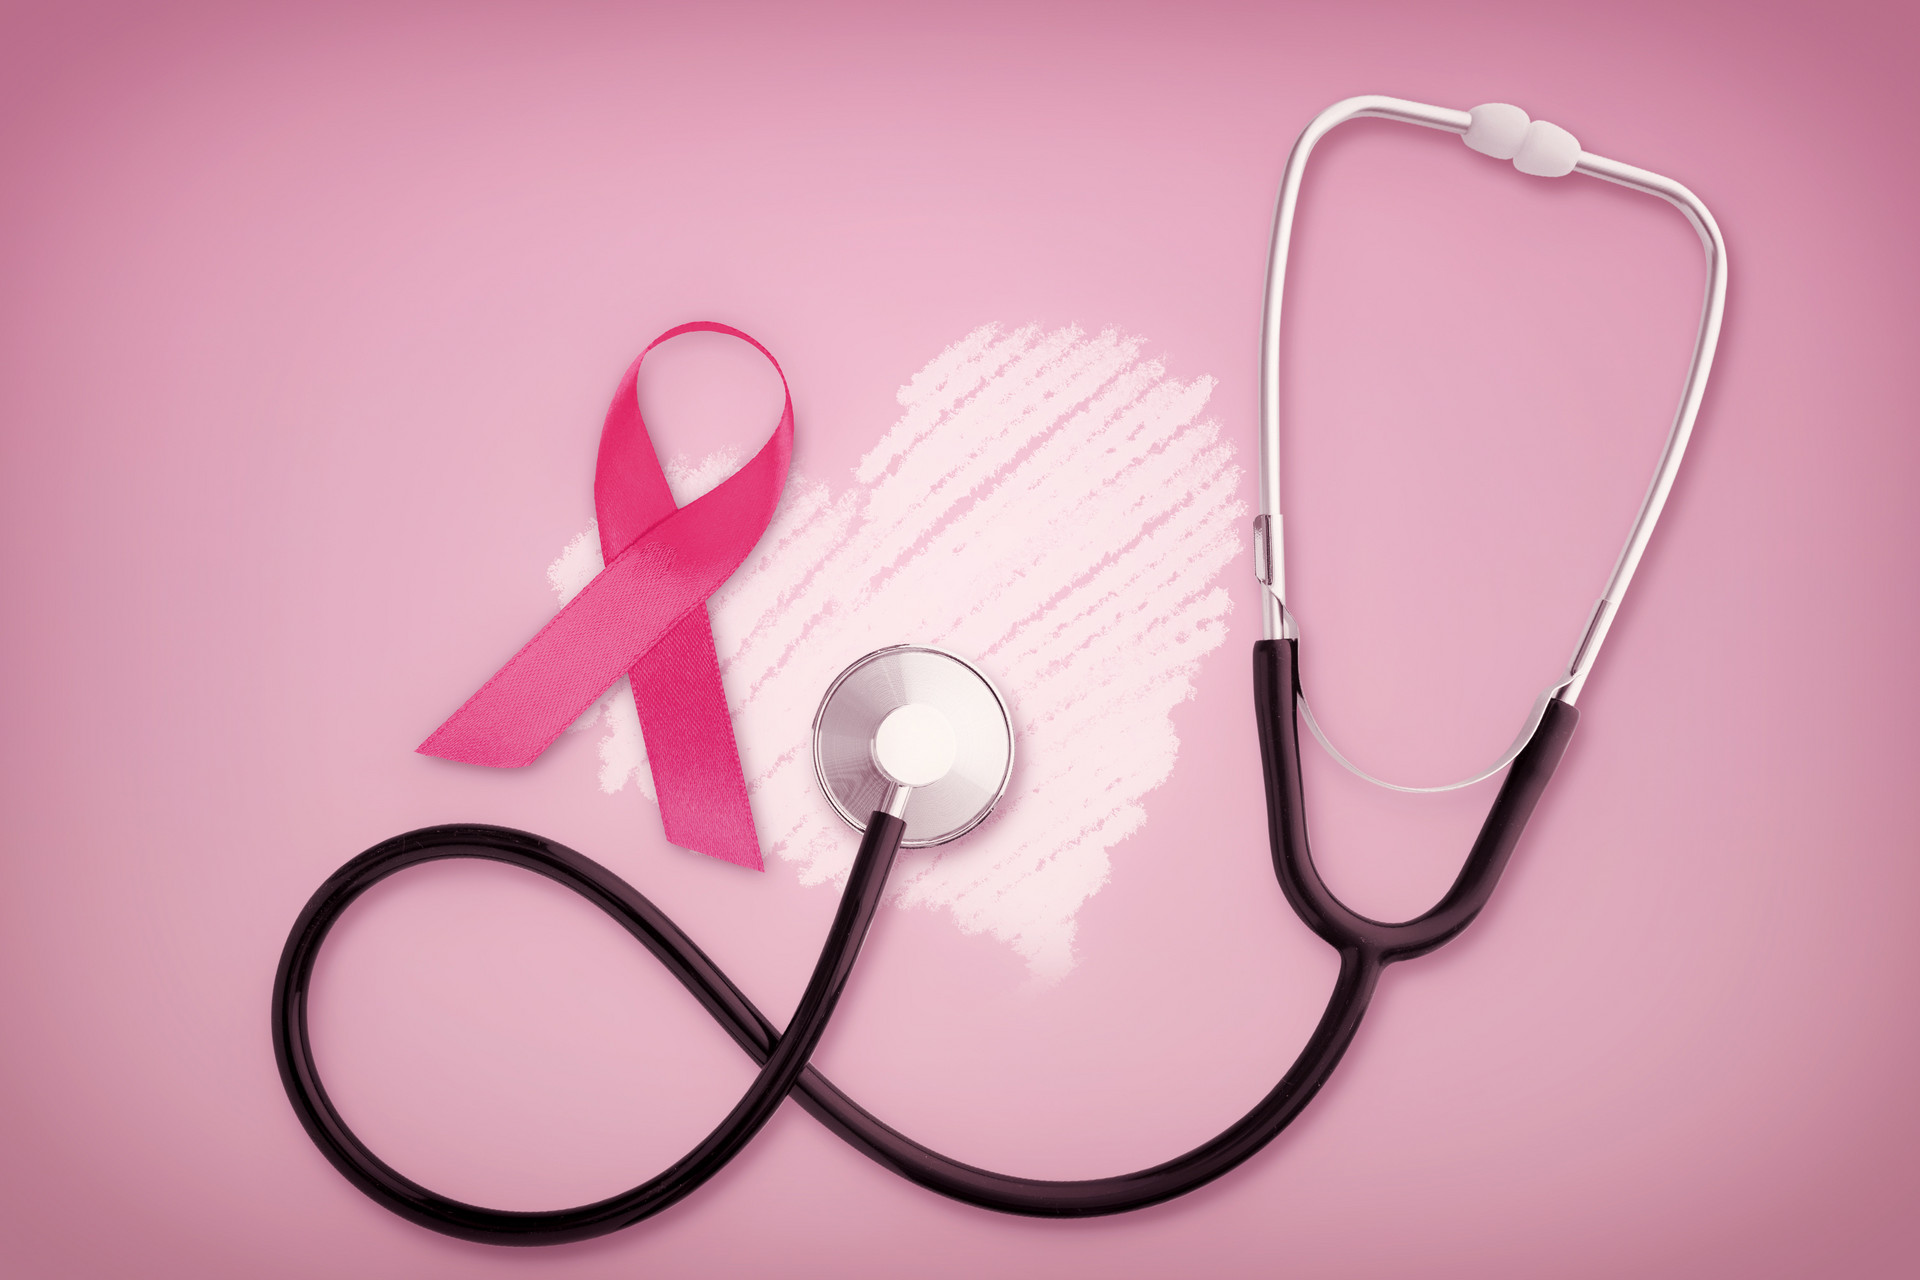 日本乳腺癌治疗